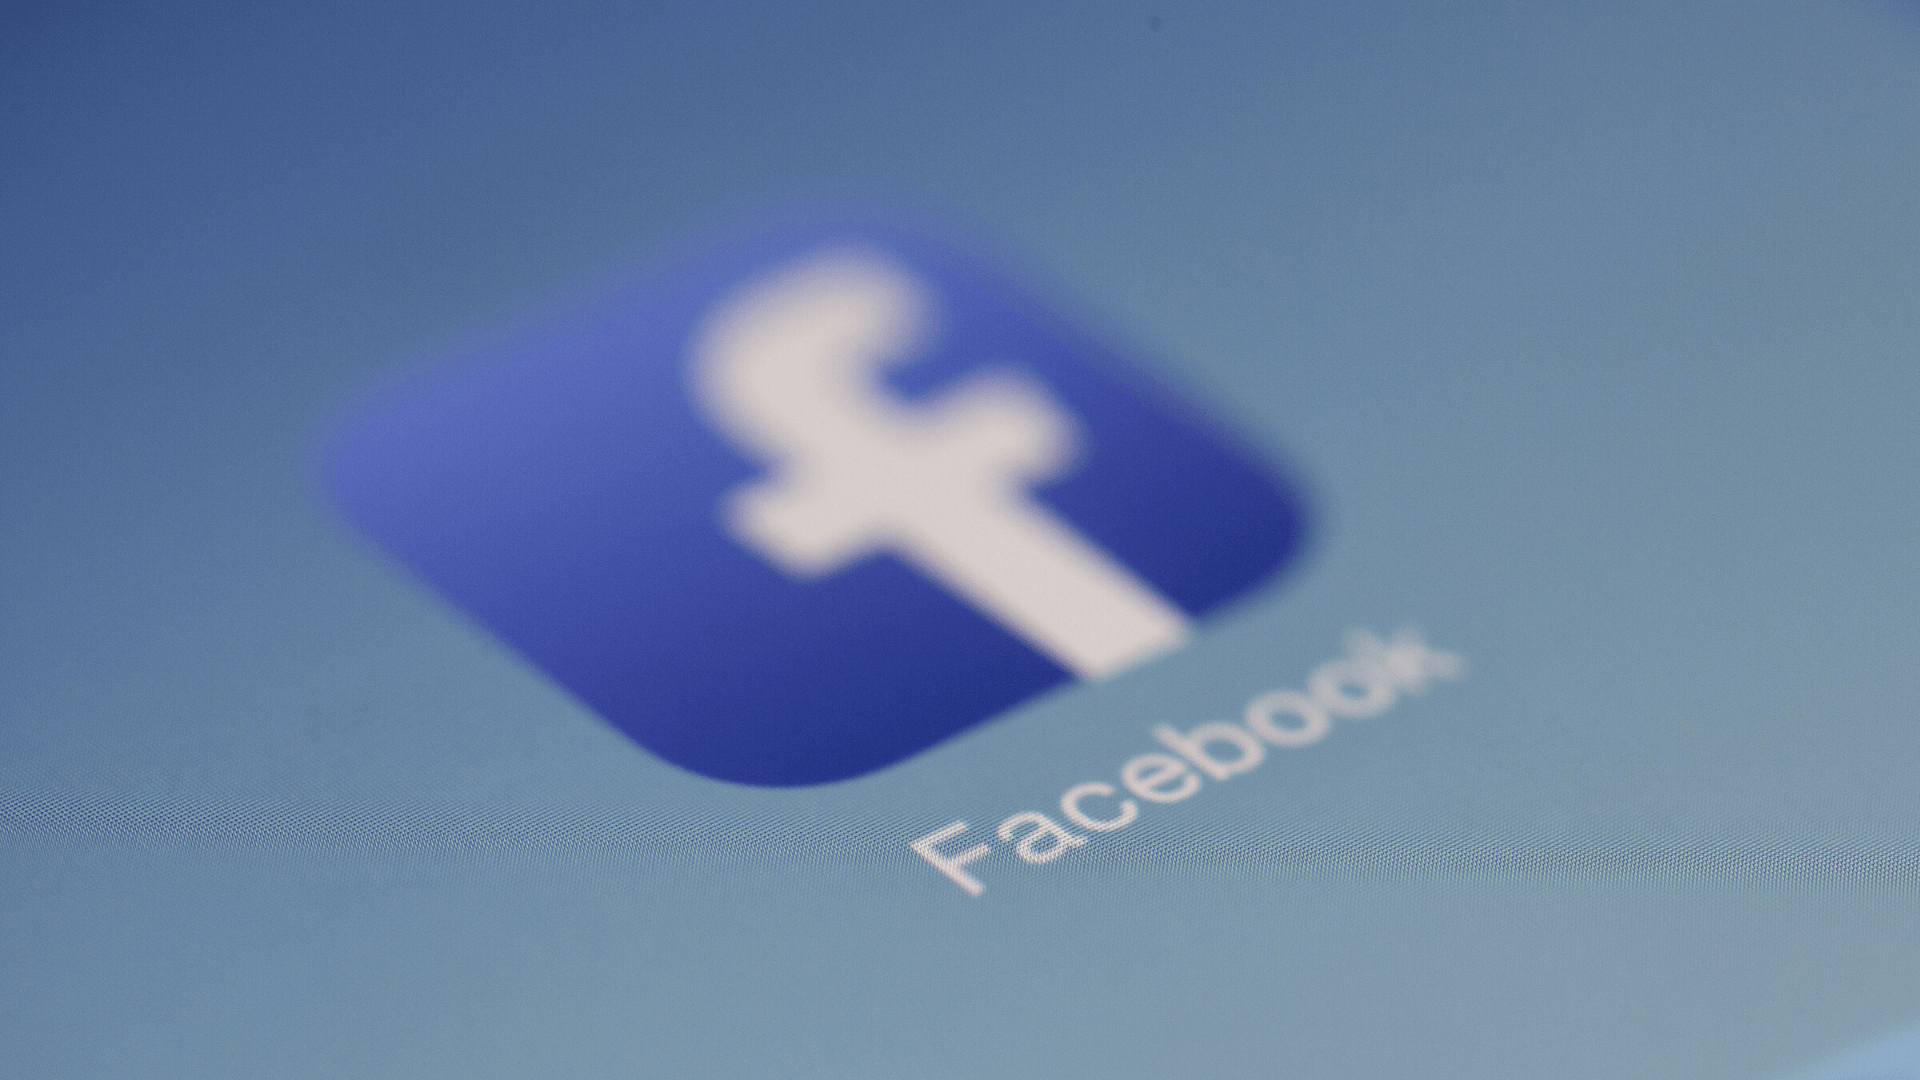 מדריך אינטנס לקידום פוסט בחינם בפייסבוק